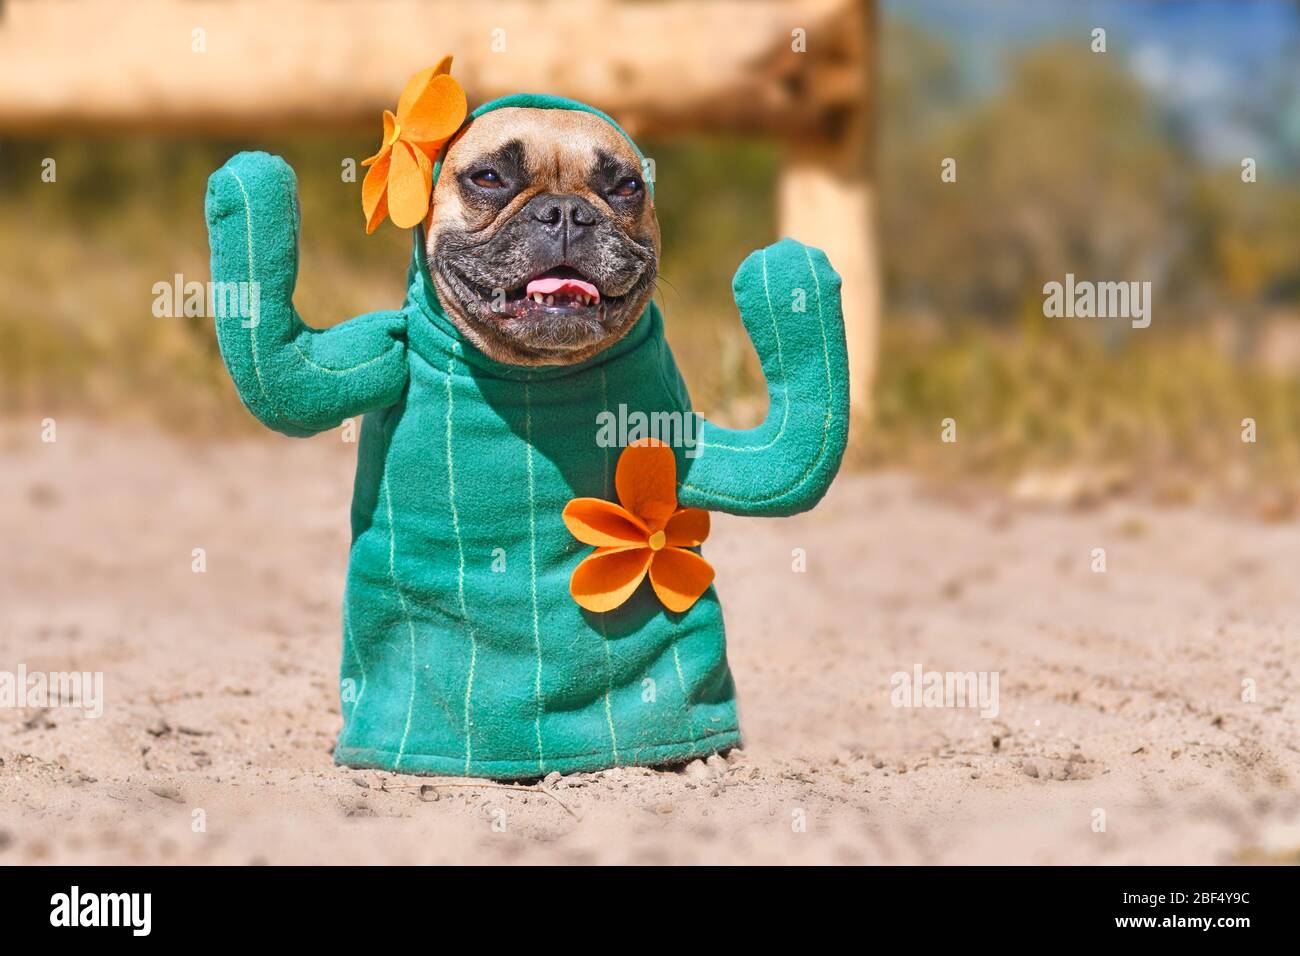 https://c8.alamy.com/compde/2bf4y9c/lustige-franzosische-bulldogge-hund-verkleidet-mit-kaktus-kostum-mit-gefalschten-armen-und-orange-rasenmaher-auf-sandigen-boden-stehen-2bf4y9c.jpg